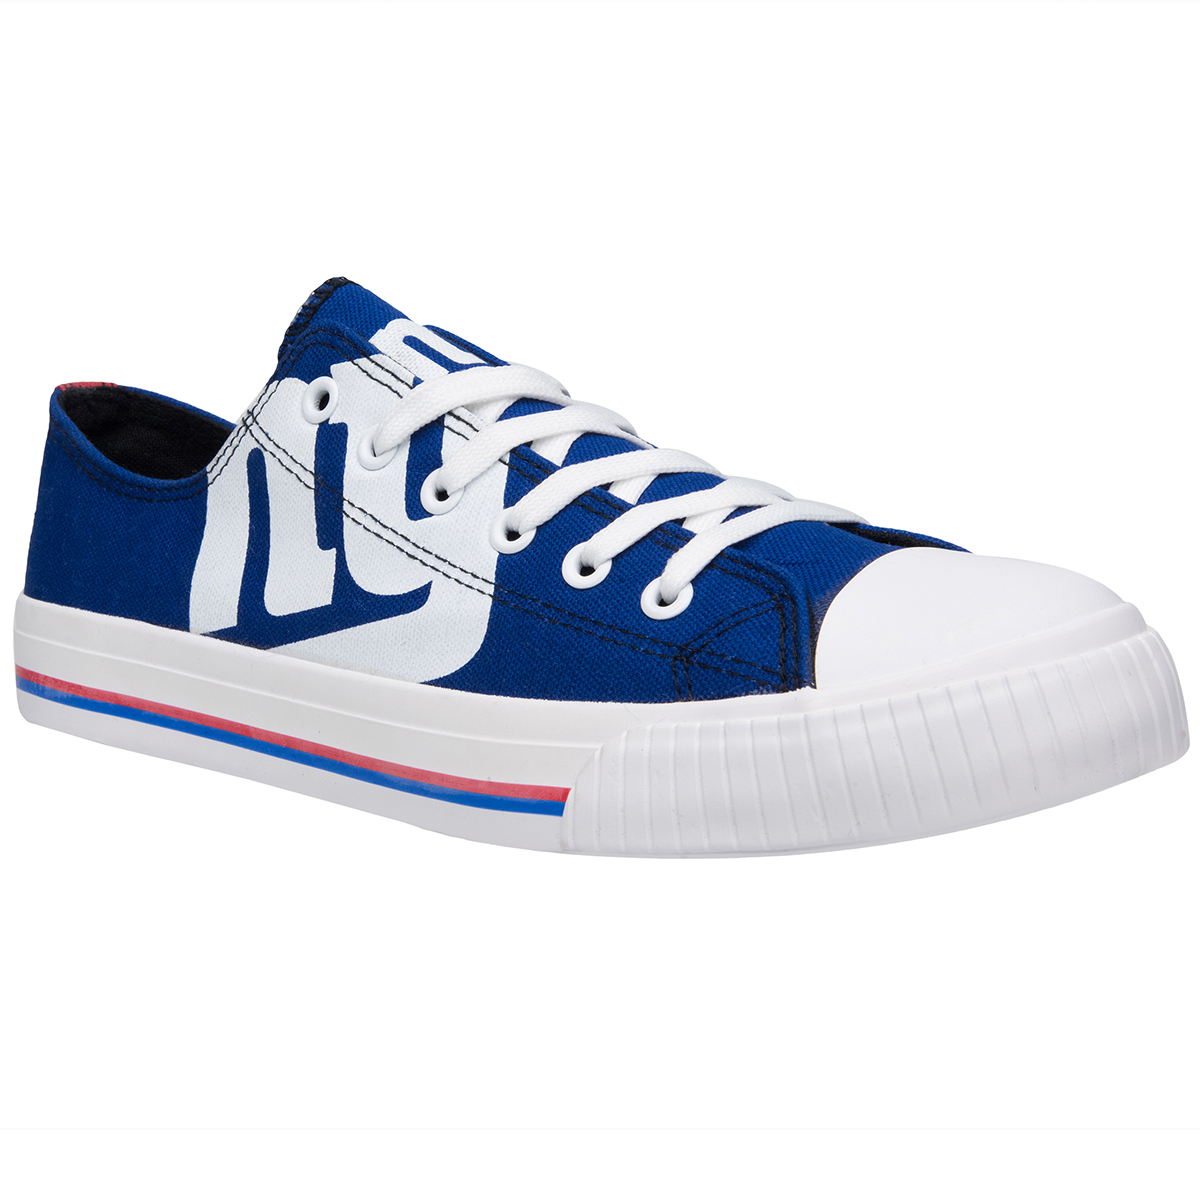 New York Giants Men's Big Logo Low-Top Canvas Sneakers - Blue, 11